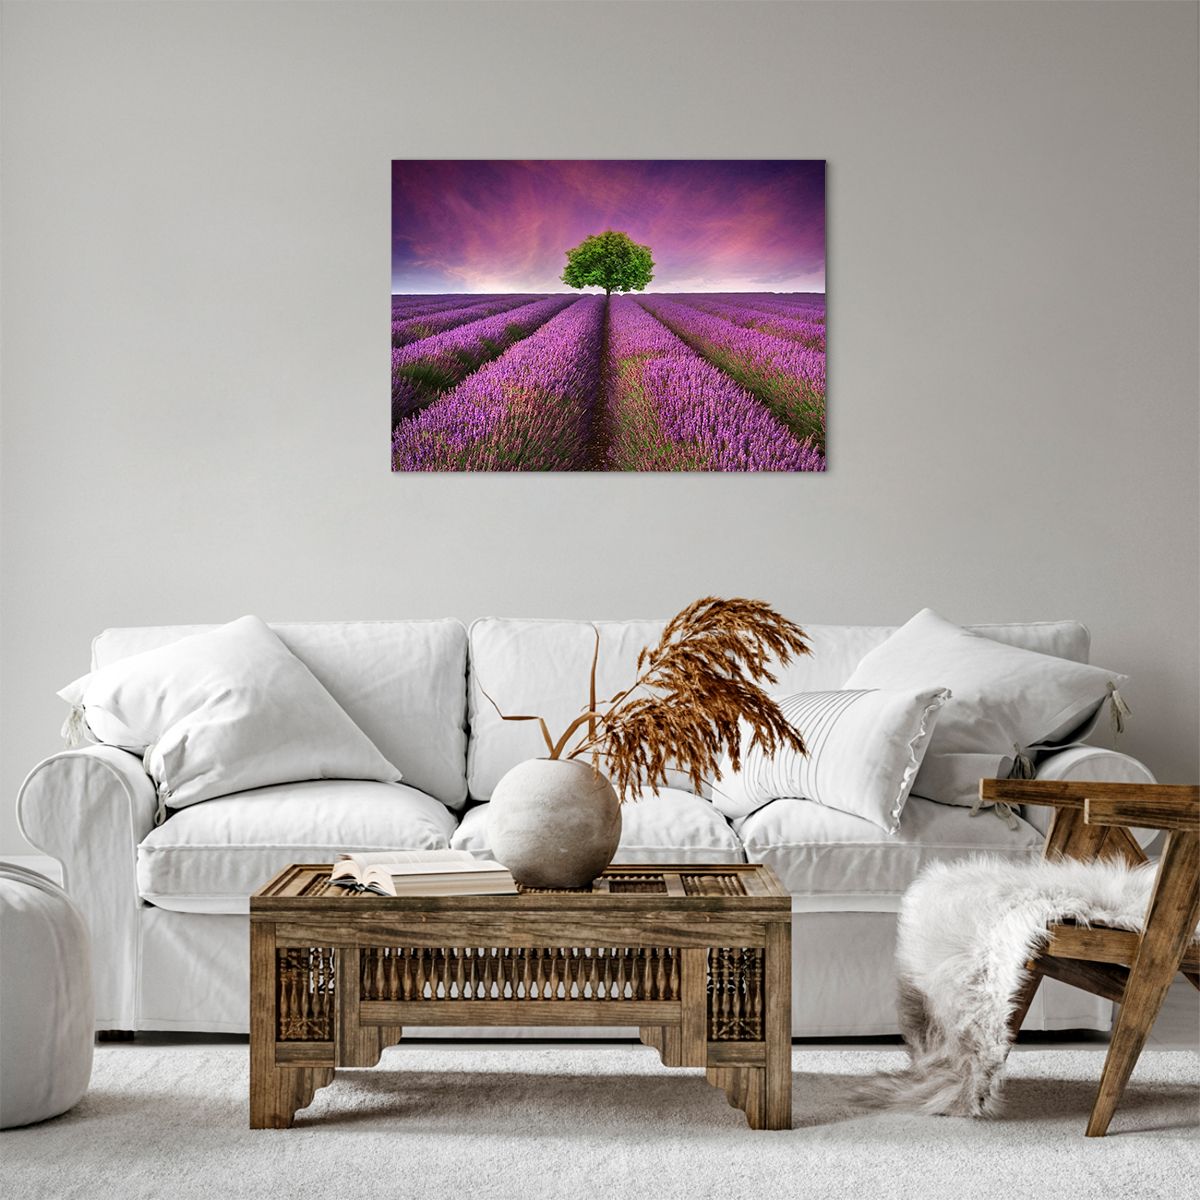 Bild auf Leinwand Landschaft, Bild auf Leinwand Lavendelfeld, Bild auf Leinwand Natur, Bild auf Leinwand Der Sonnenuntergang, Bild auf Leinwand Baum